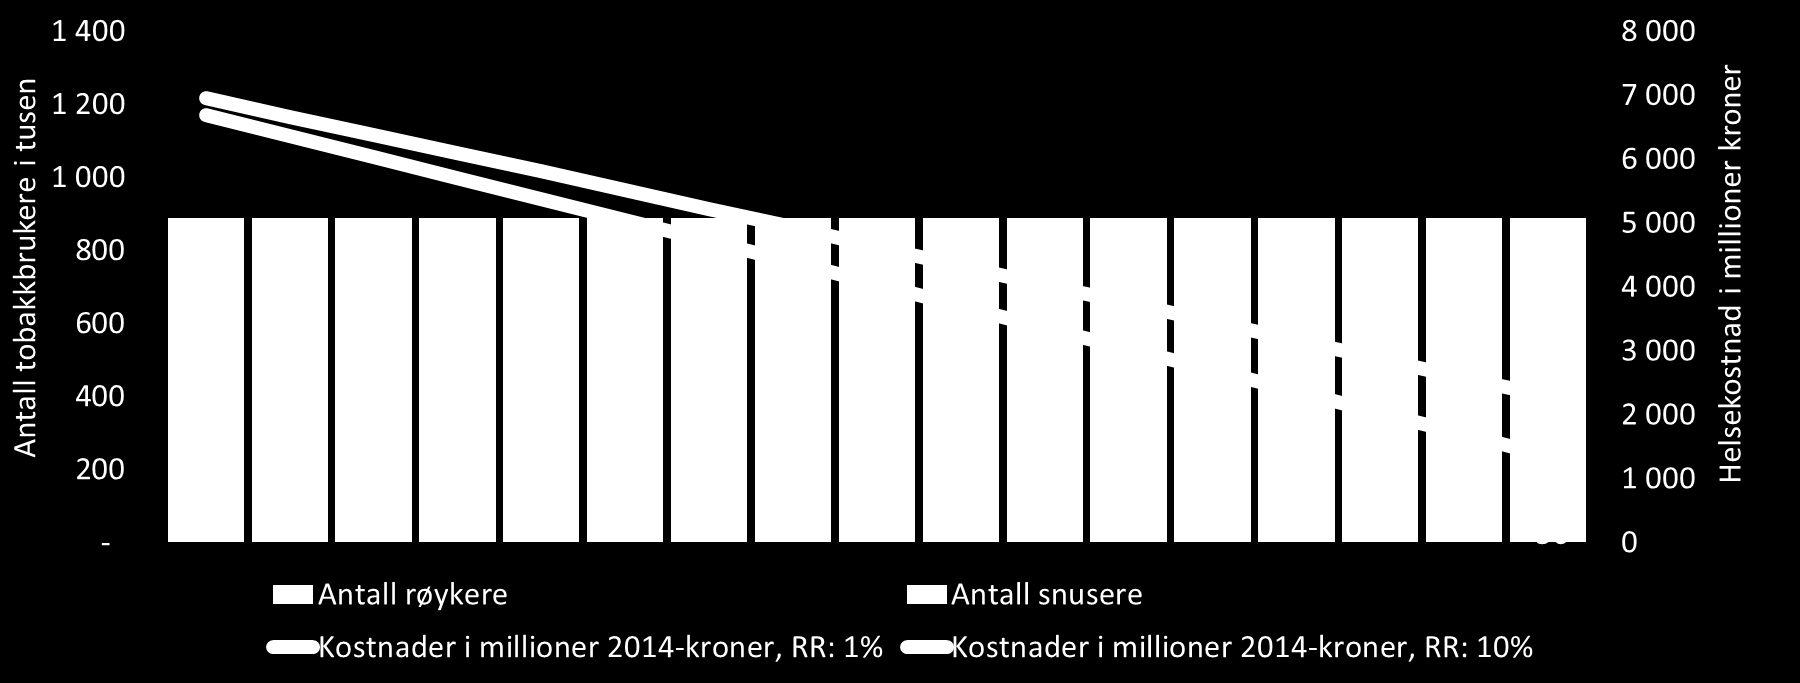 Figur 8: Konstant antall tobakkbrukere i tusener fra 2014 til 2030. Andelen snusere og røykere fremskrevet.